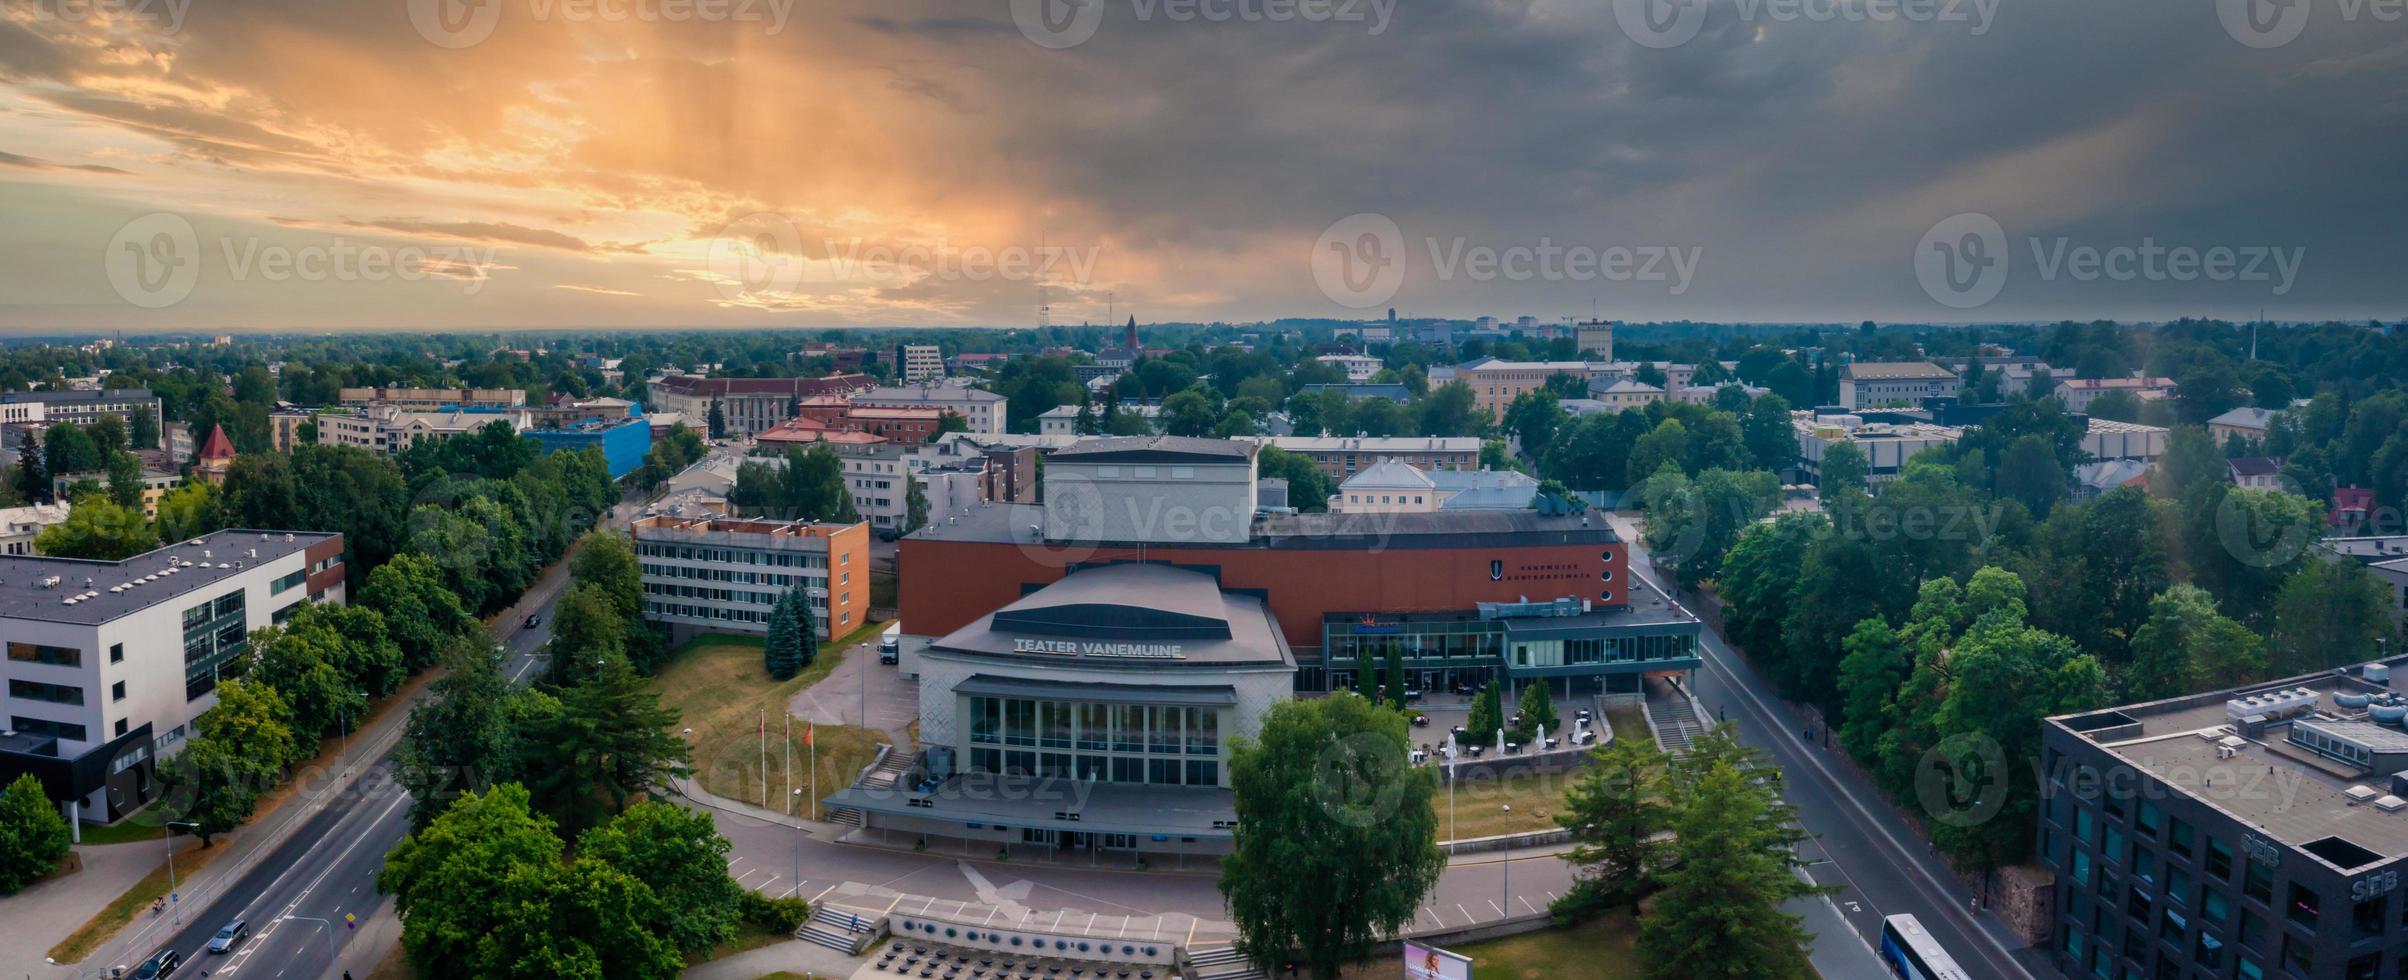 paisagem urbana da cidade de tartu, na estônia. foto